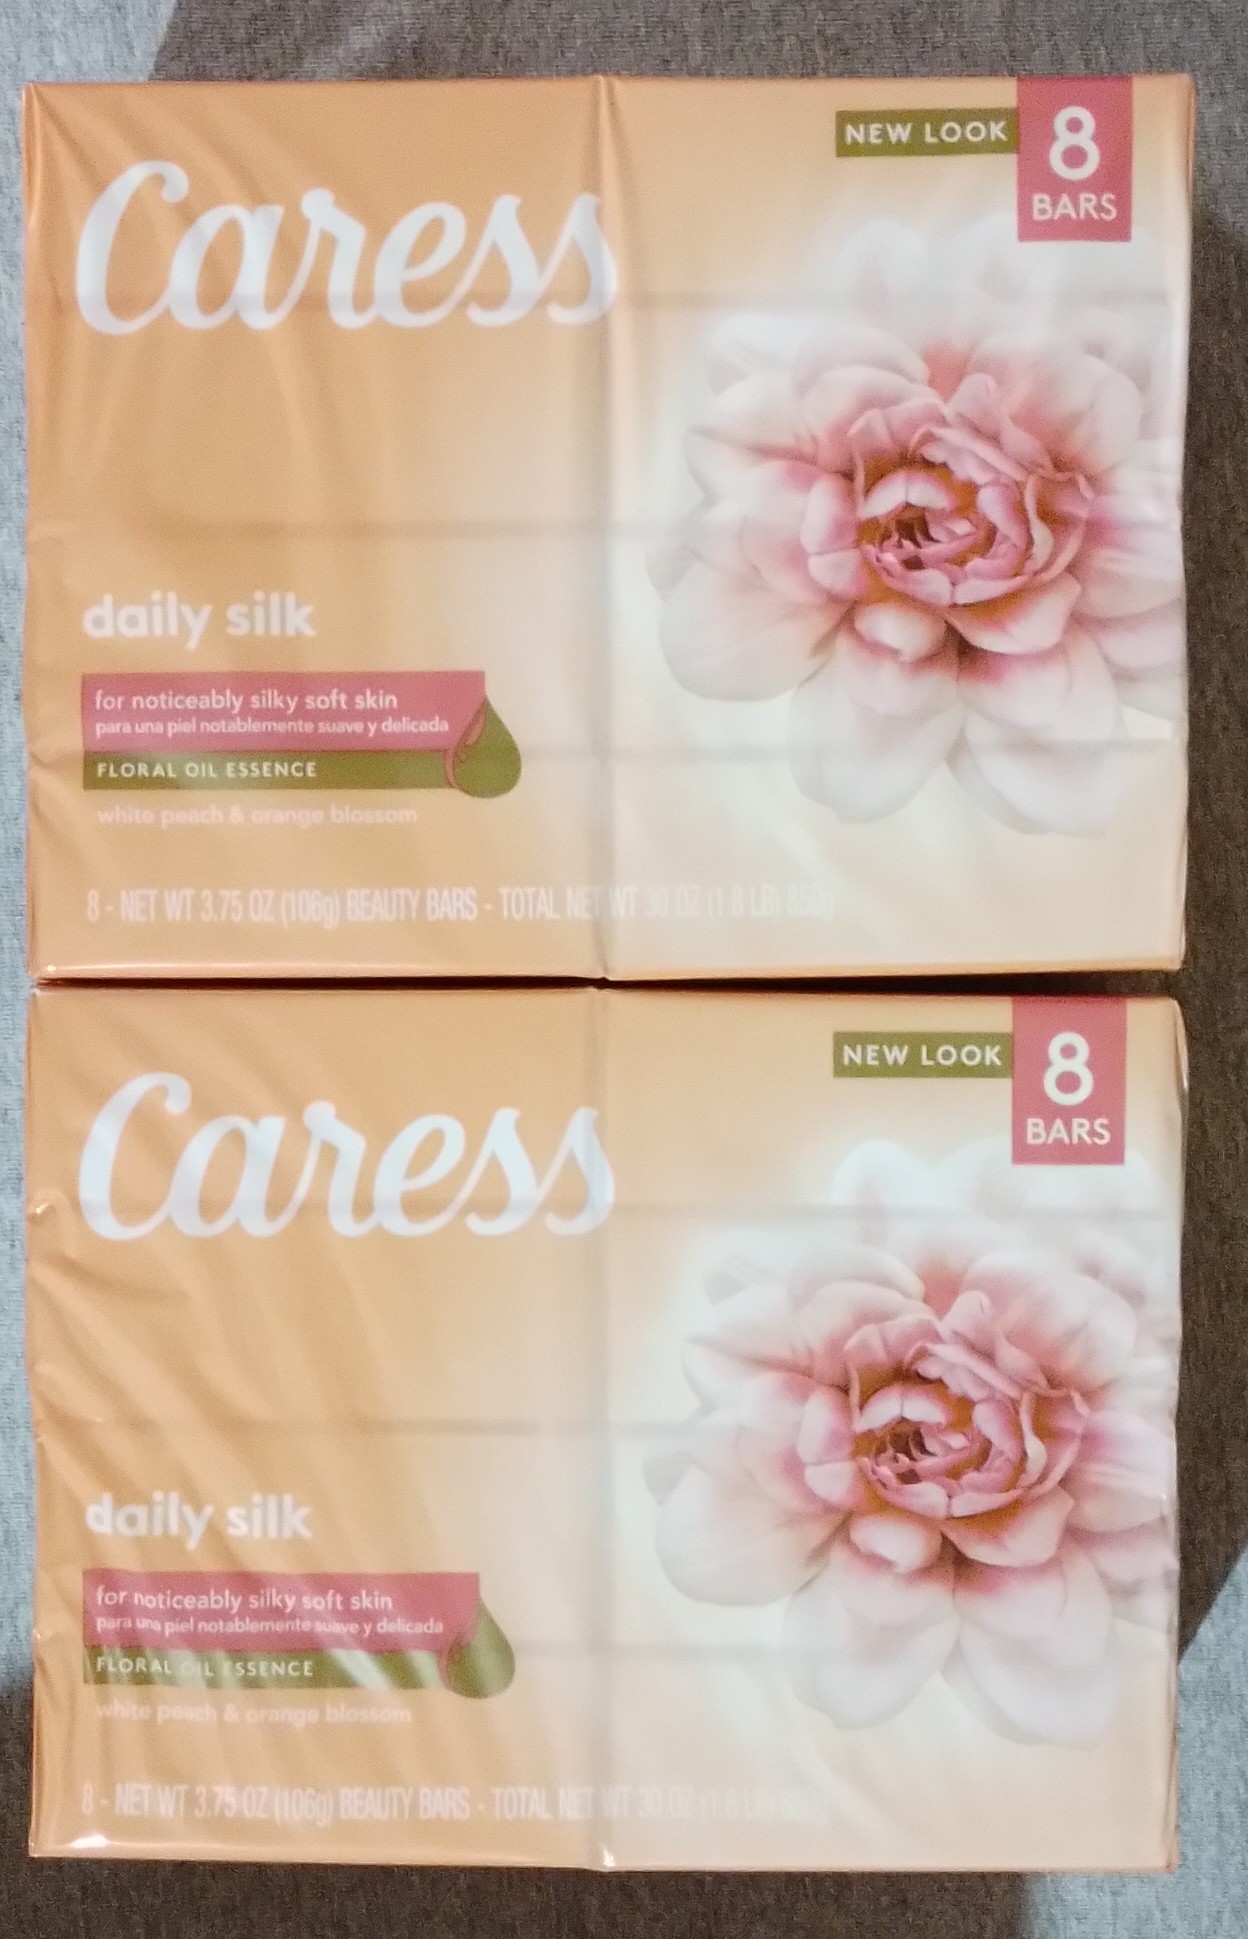 Caress Silkening Beauty Bar Daily Silk 3.75 Ounce (16 Count